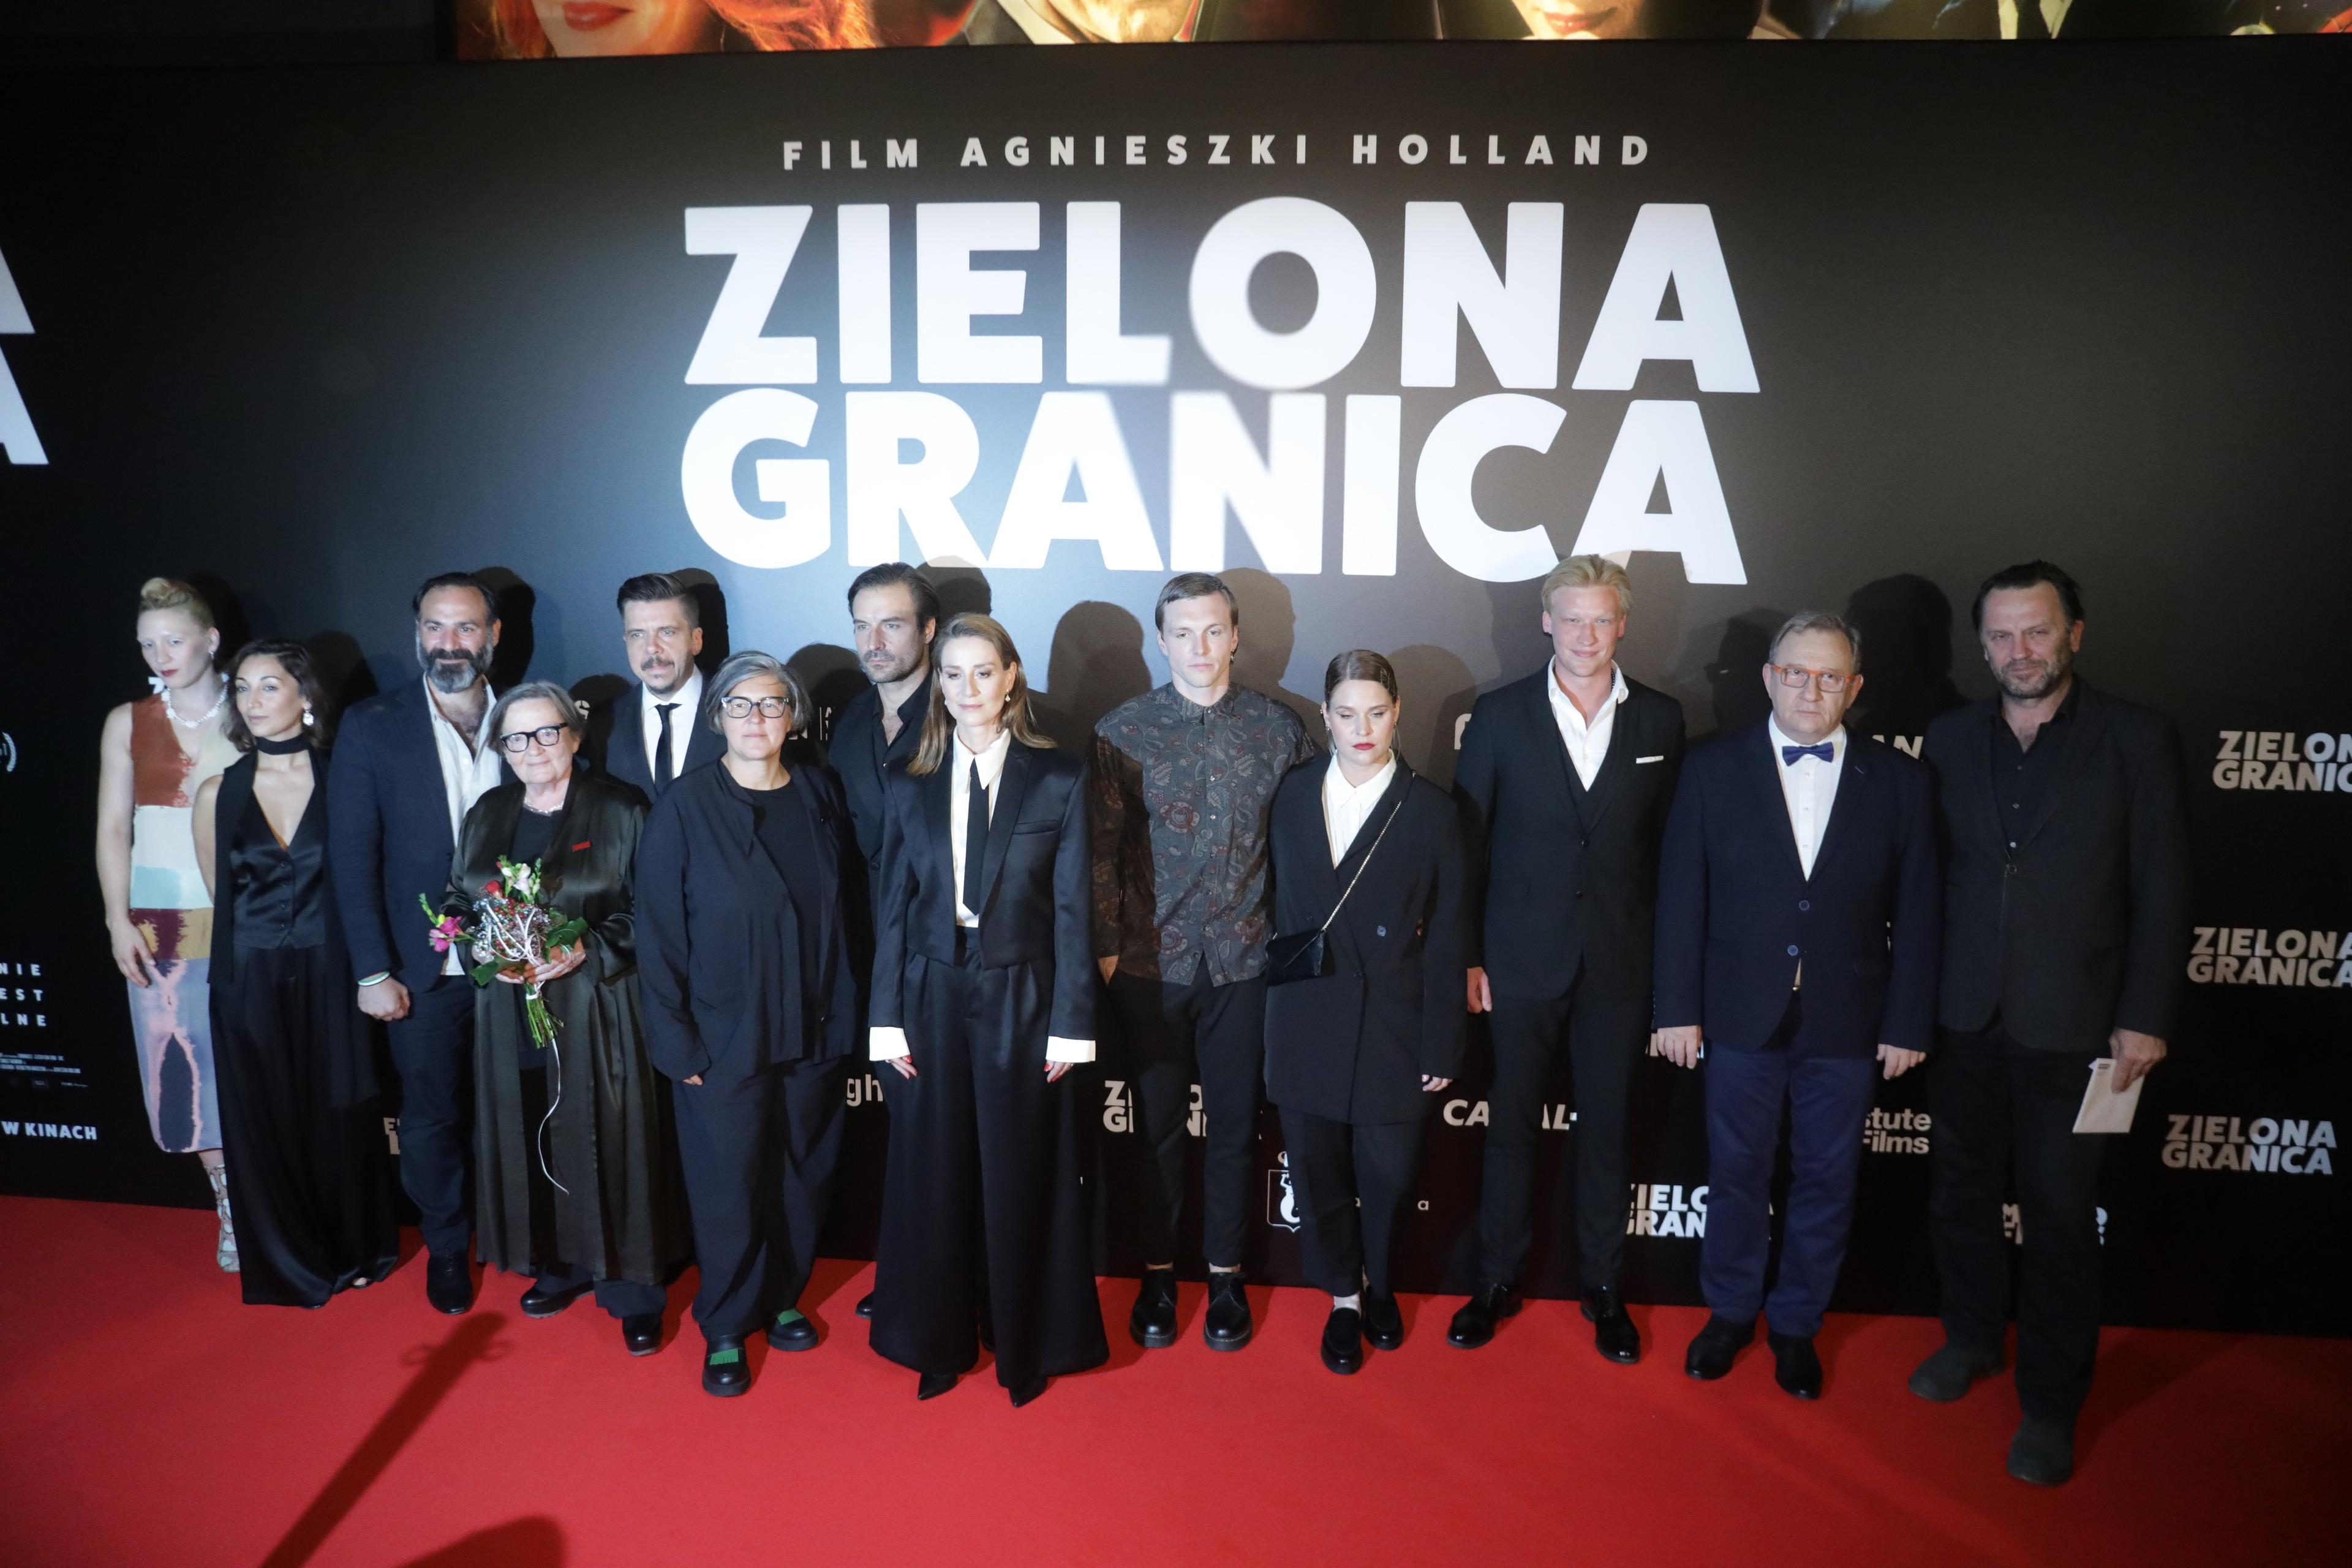 Agnieszka Holland wraz z ekipą filmową stoi na czerwonym dywanie, za nimi na czarnym tle duży napis "Zielona granica"